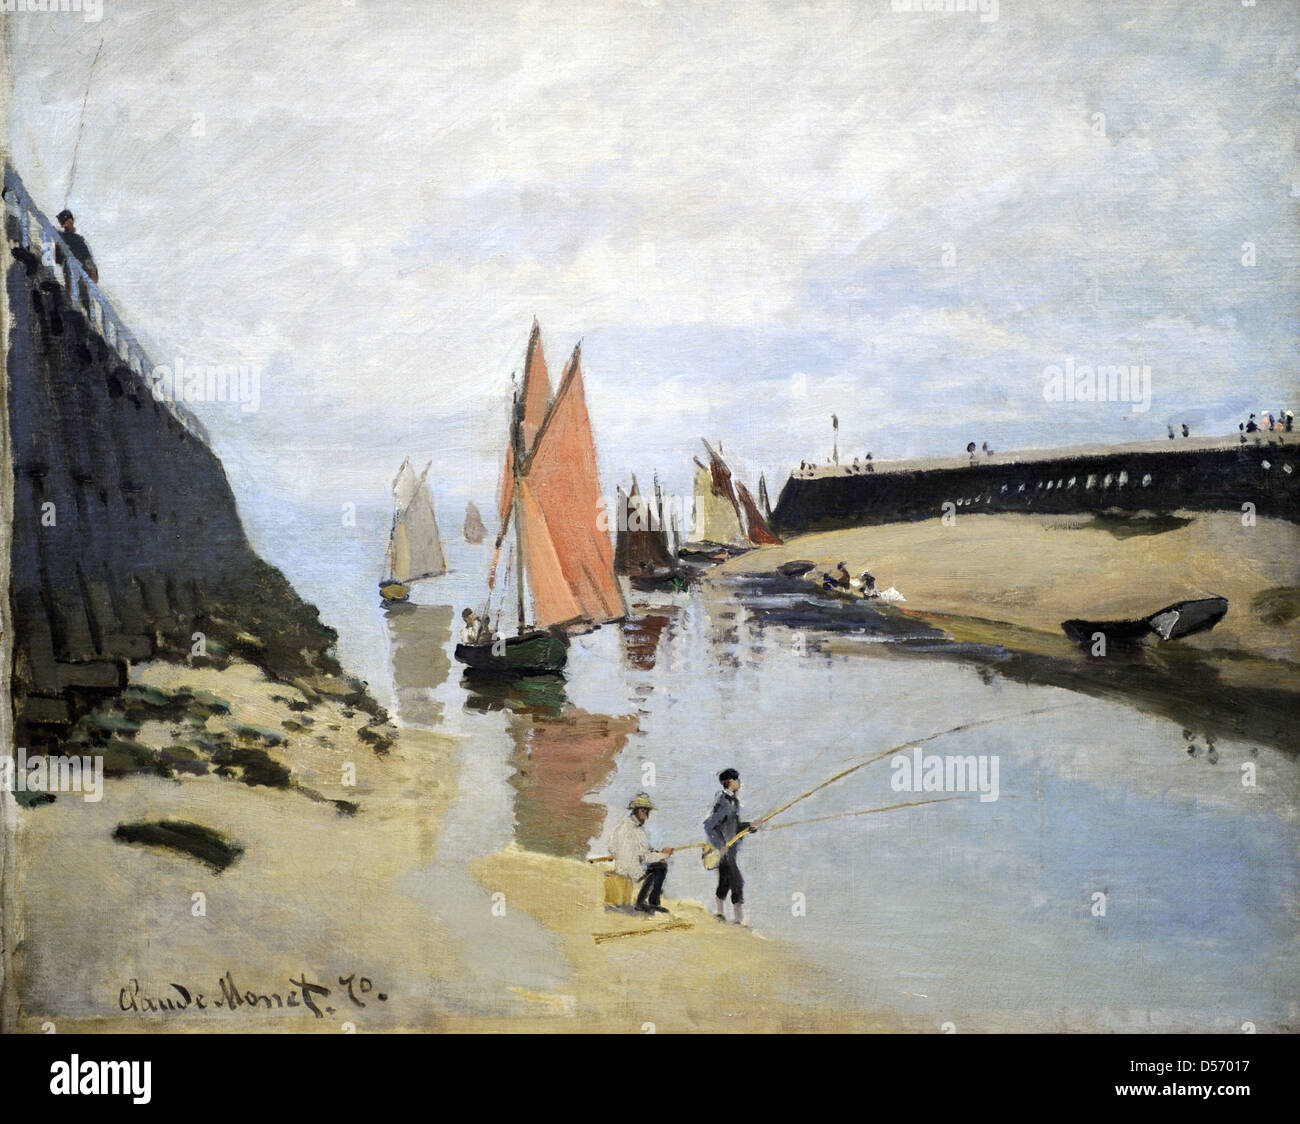 Claude Monet (1840-1926). Französischer Maler. Der Hafen von Trouville, 1870. Öl auf Leinwand. Museum der bildenden Künste. Budapest. Ungarn. Stockfoto